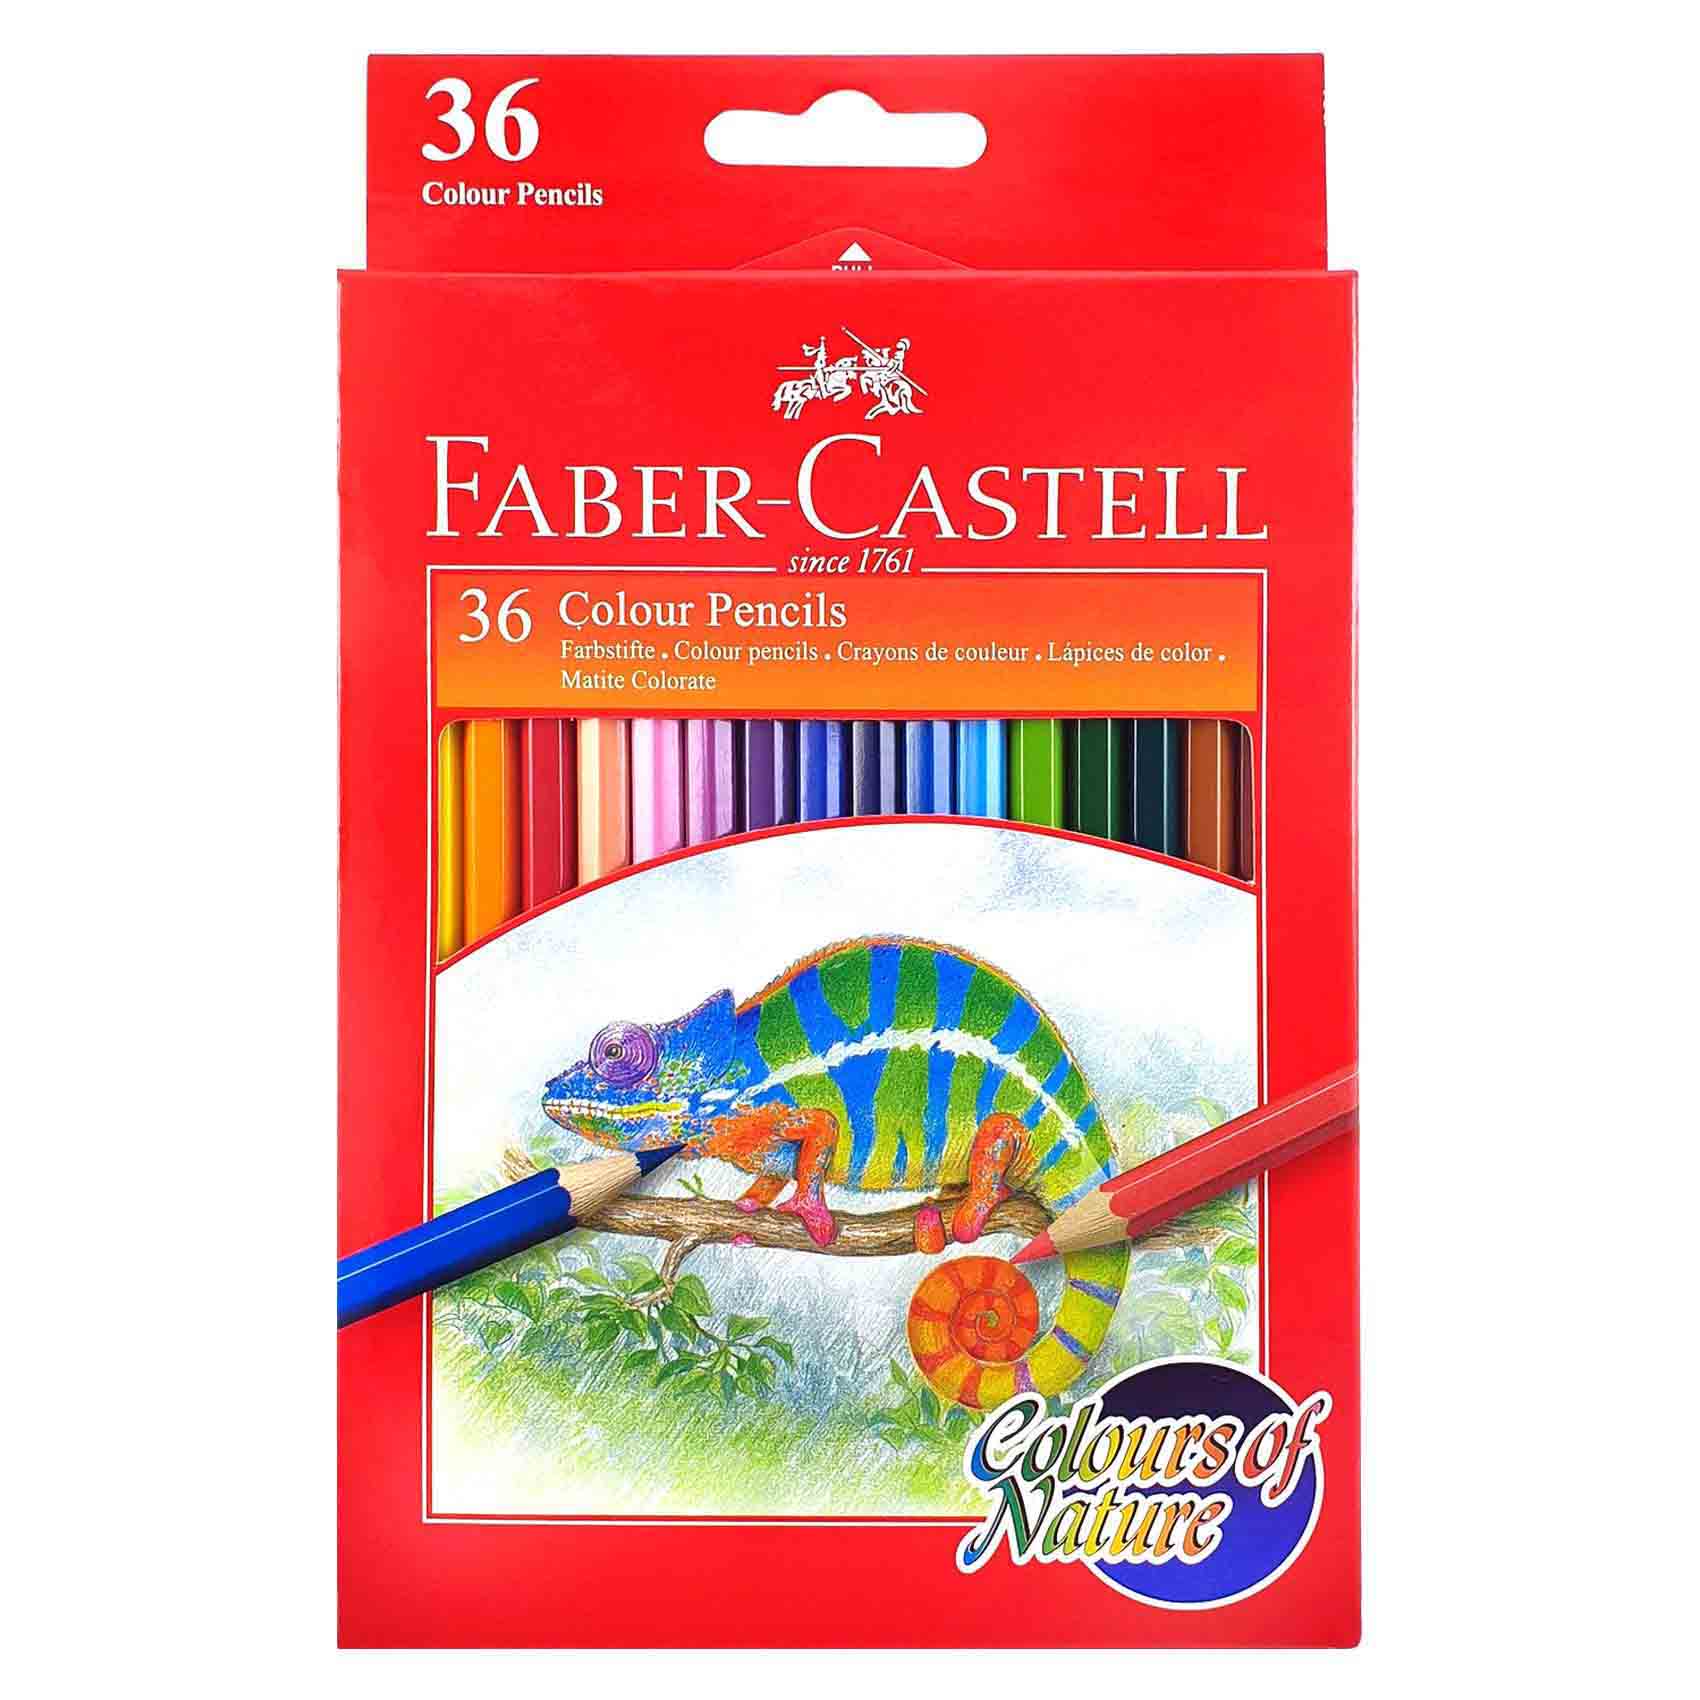 Faber-Castell Colours of Nature Colouring Pencil Multicolour 36 PCS